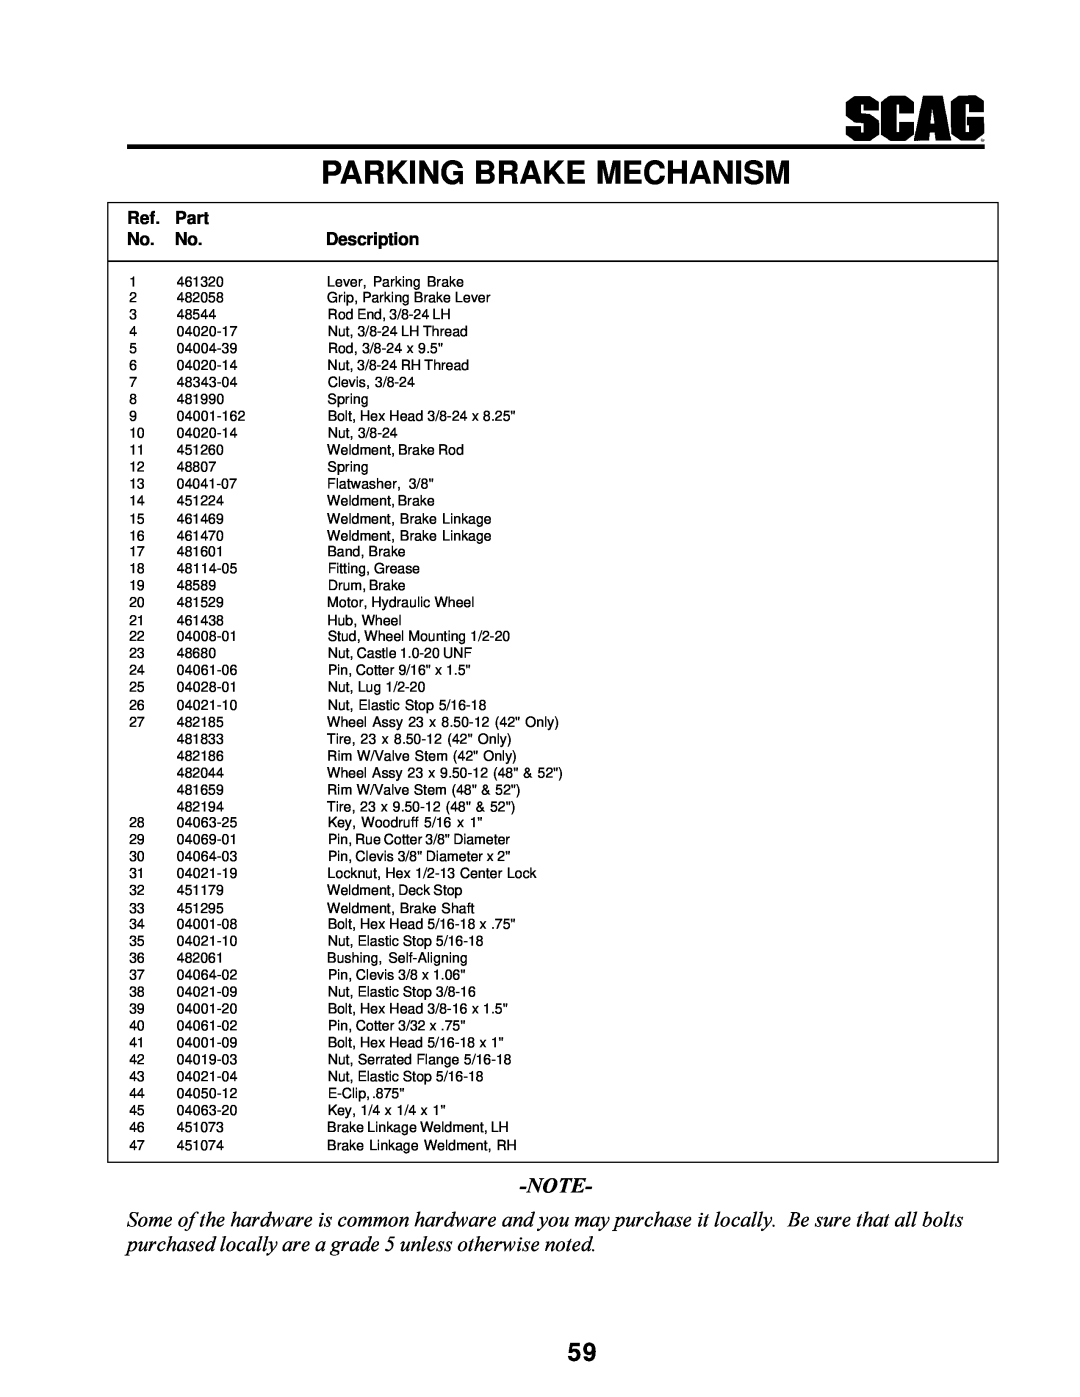 MB QUART SCR manual Parking Brake Mechanism, Part, Description 